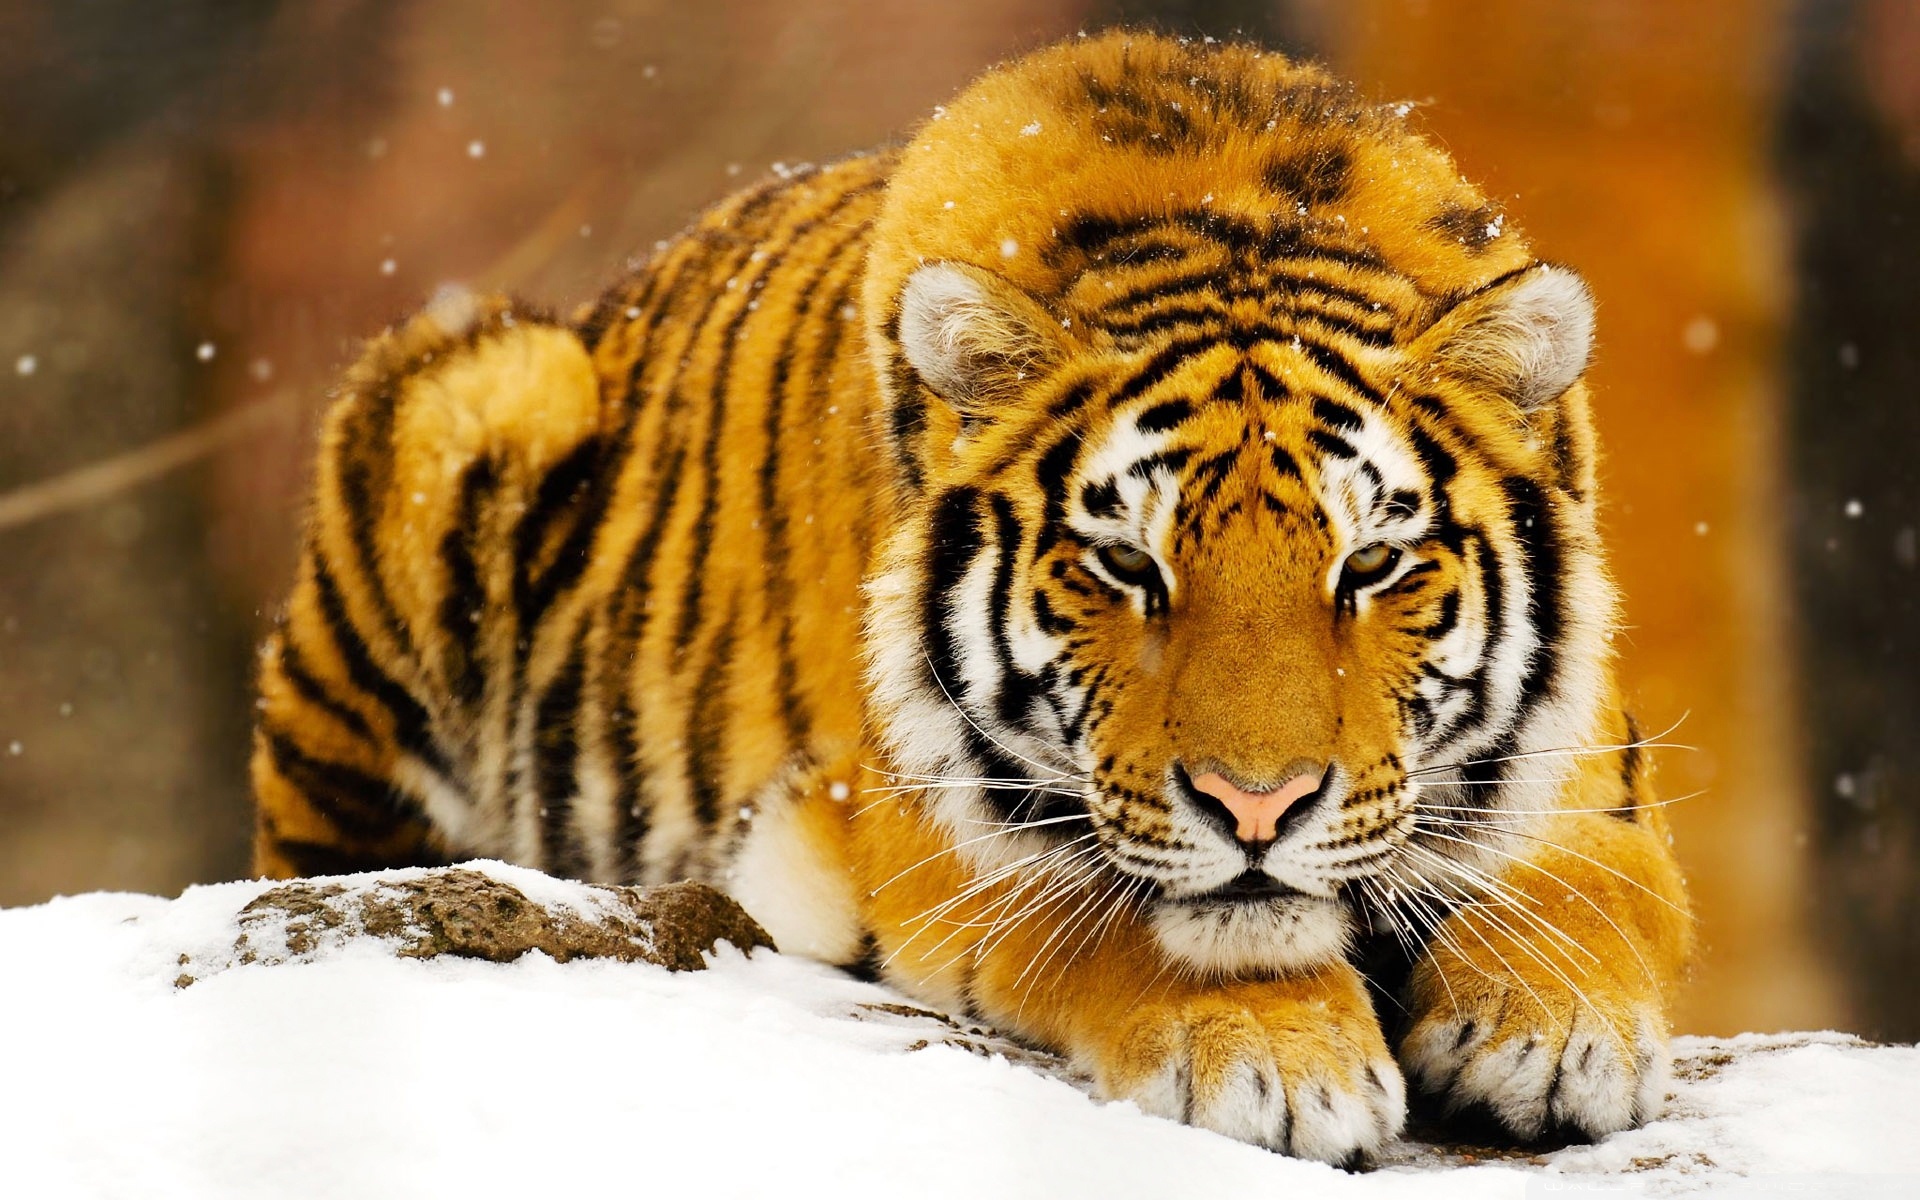 Siberian Snow Tiger3099912481 - Siberian Snow Tiger - Tiger, Snow, Siberian, Manta